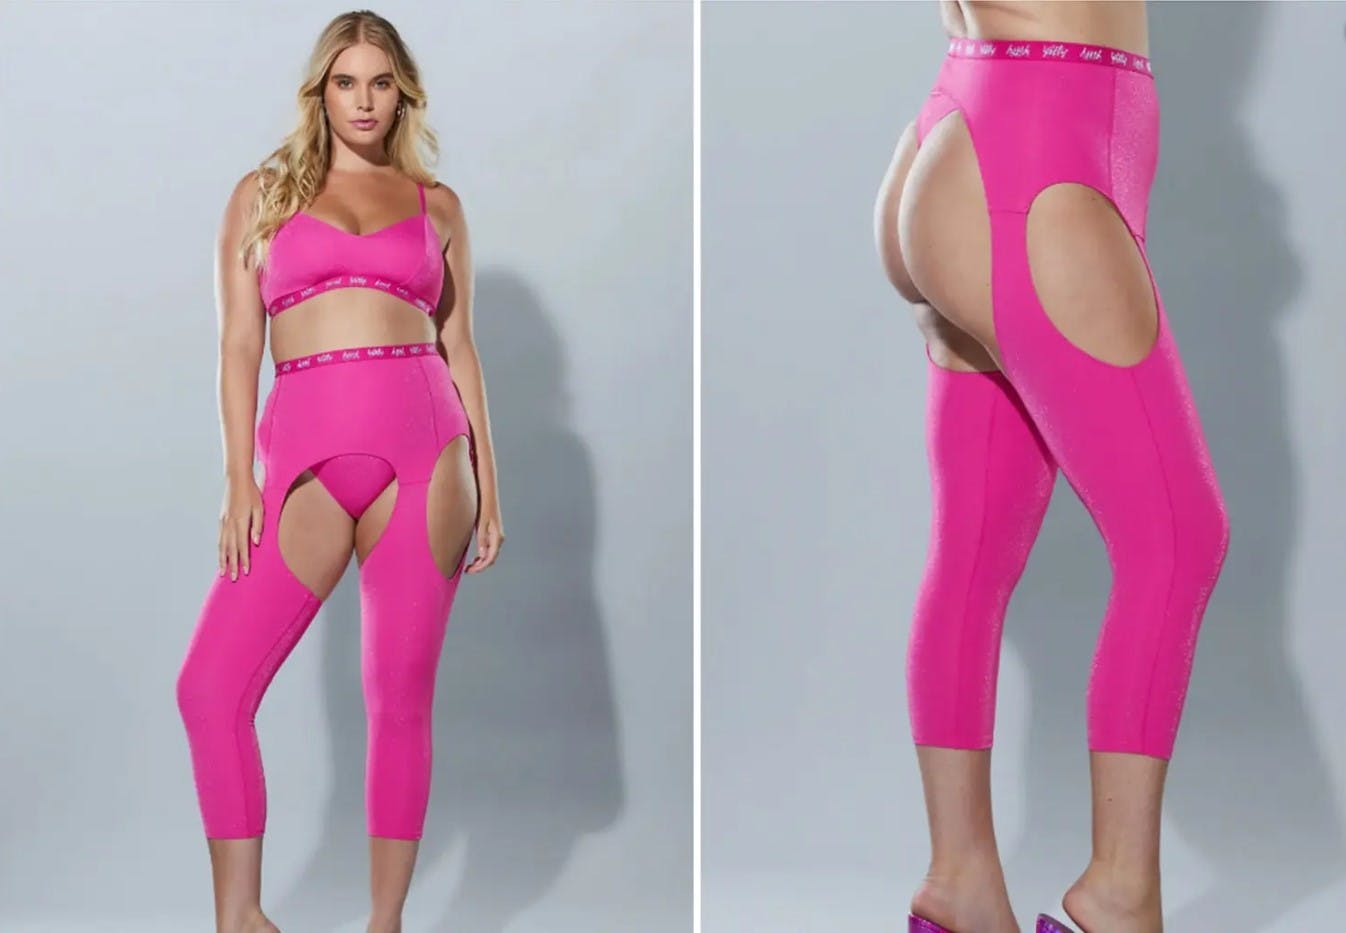 Her er de omdiskuterede bukser, som folk på internettet undres over.&nbsp;
